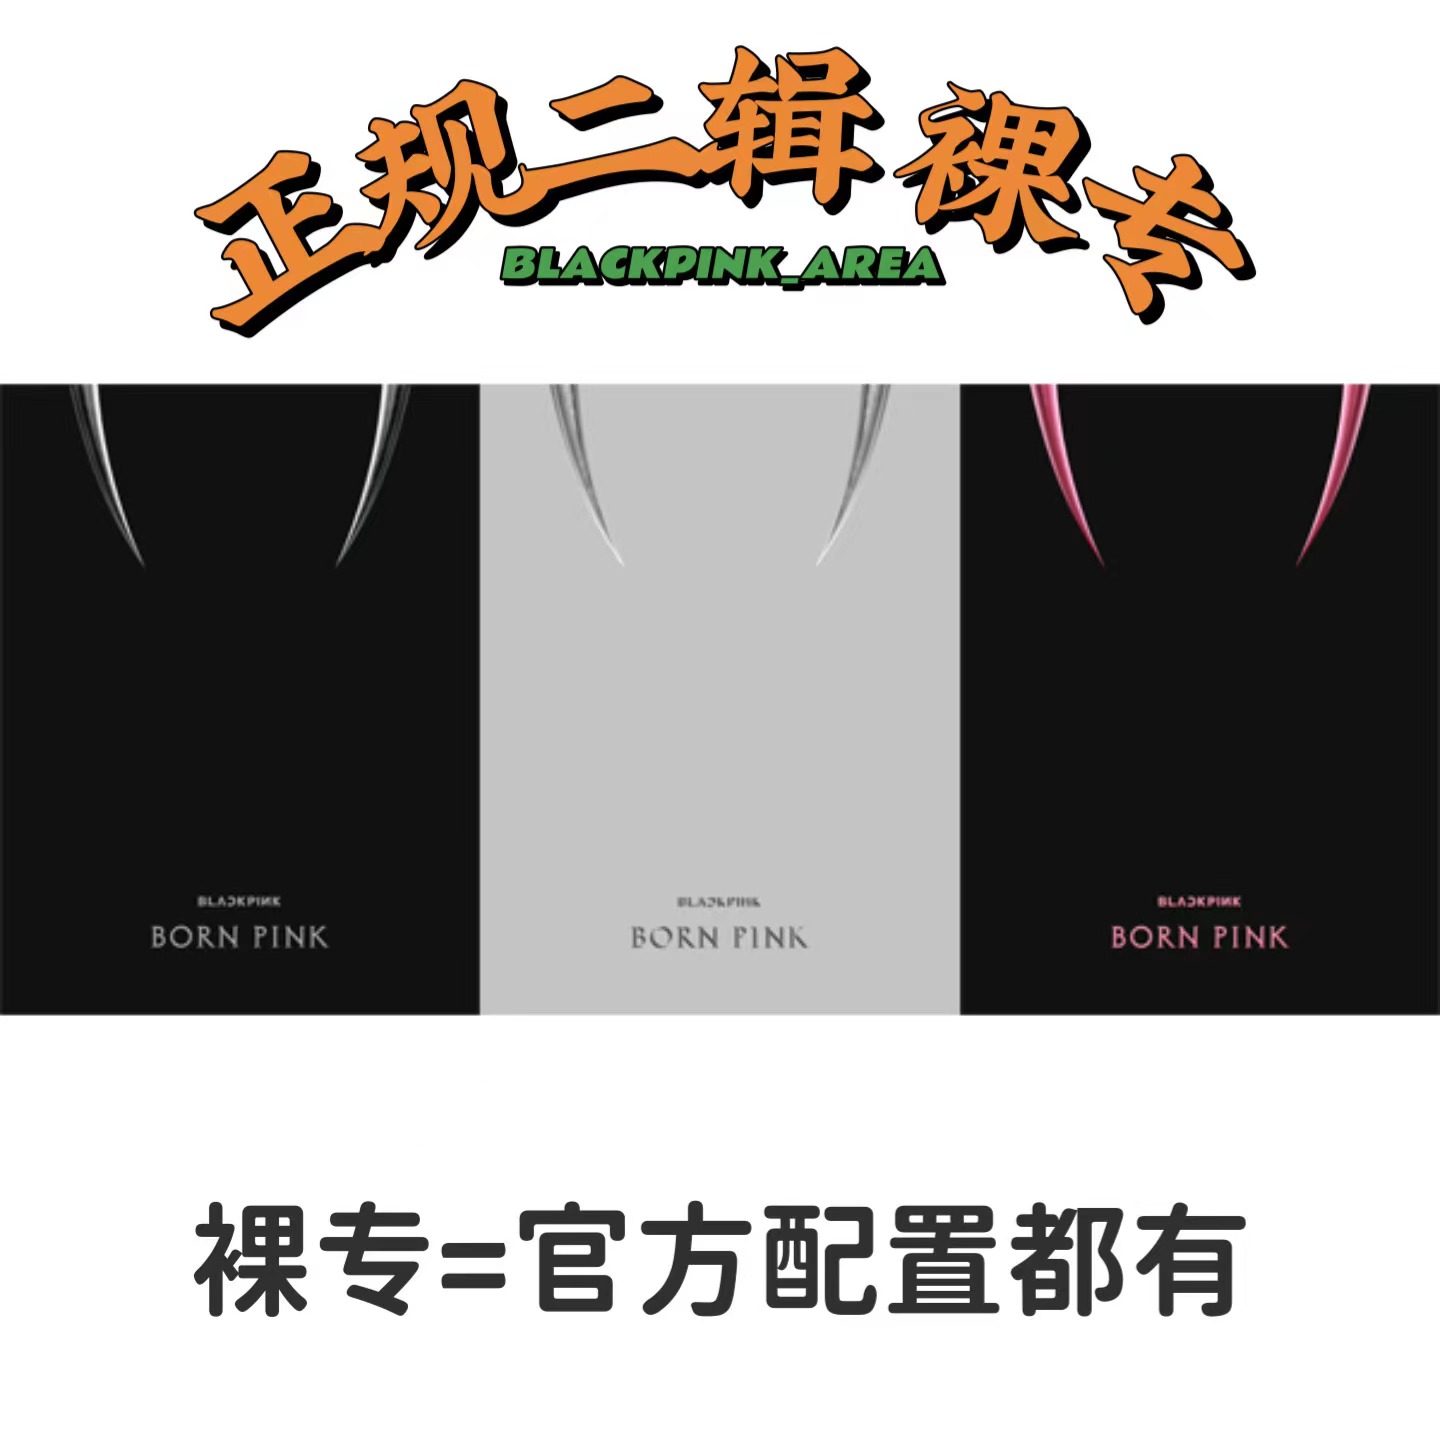 [全款 裸专][Ktown4u 独家特典] BLACKPINK - 2nd ALBUM [BORN PINK] BOX SET_BLACKPINK吧官博